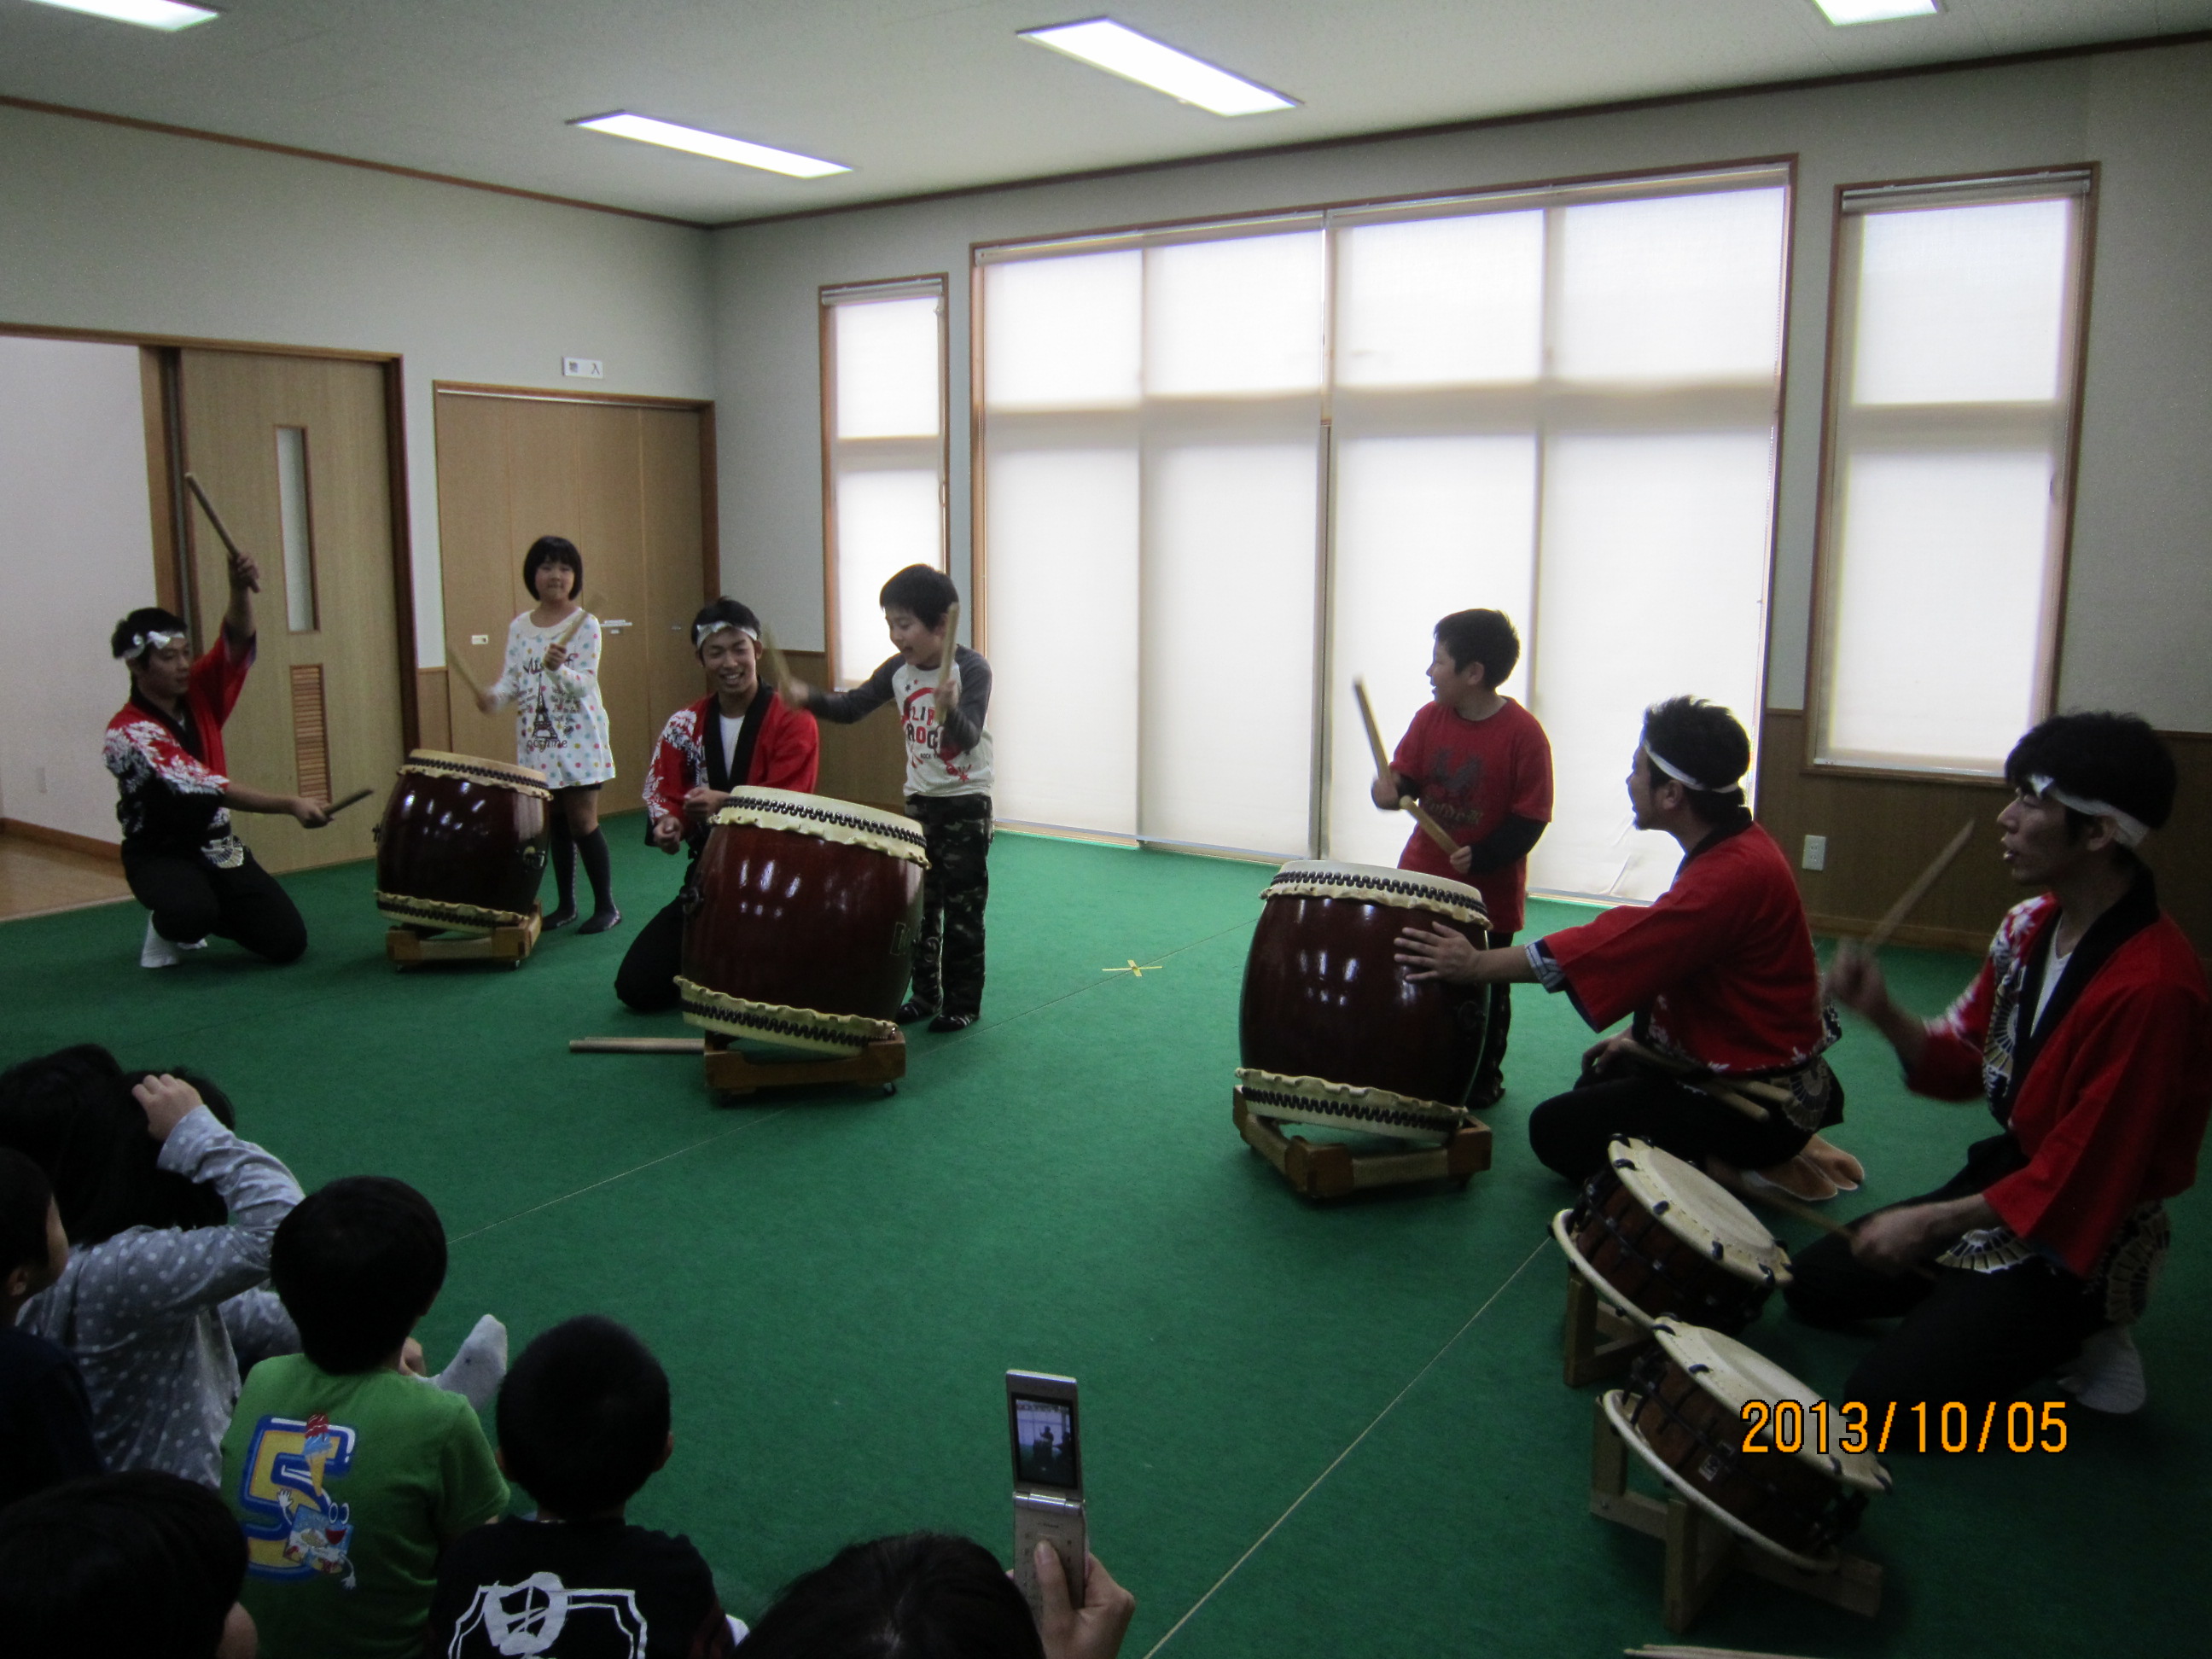 和太鼓の演奏・獅子舞の実演と体験の様子